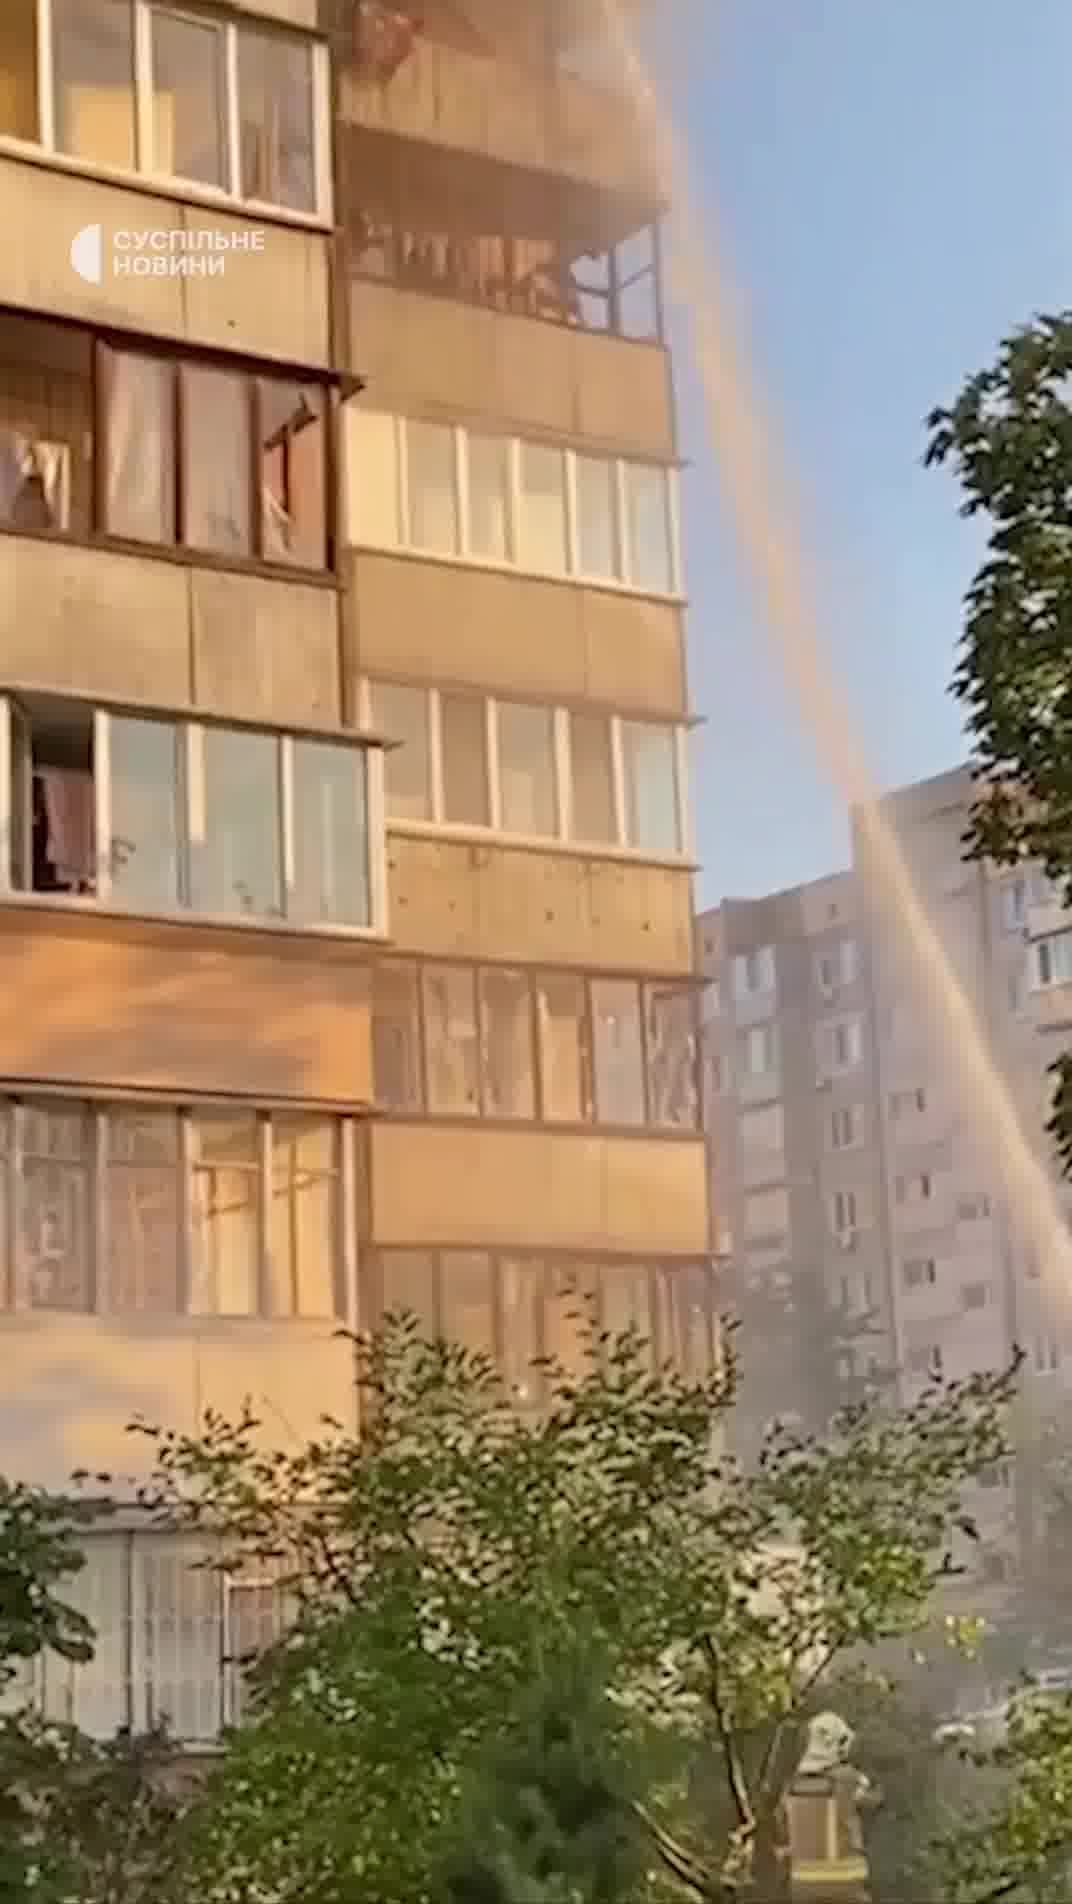 Կիևի Օբոլոնսկի շրջանում ռուսական հրթիռային հարվածի հետևանքով վնասվել է բնակելի շենք